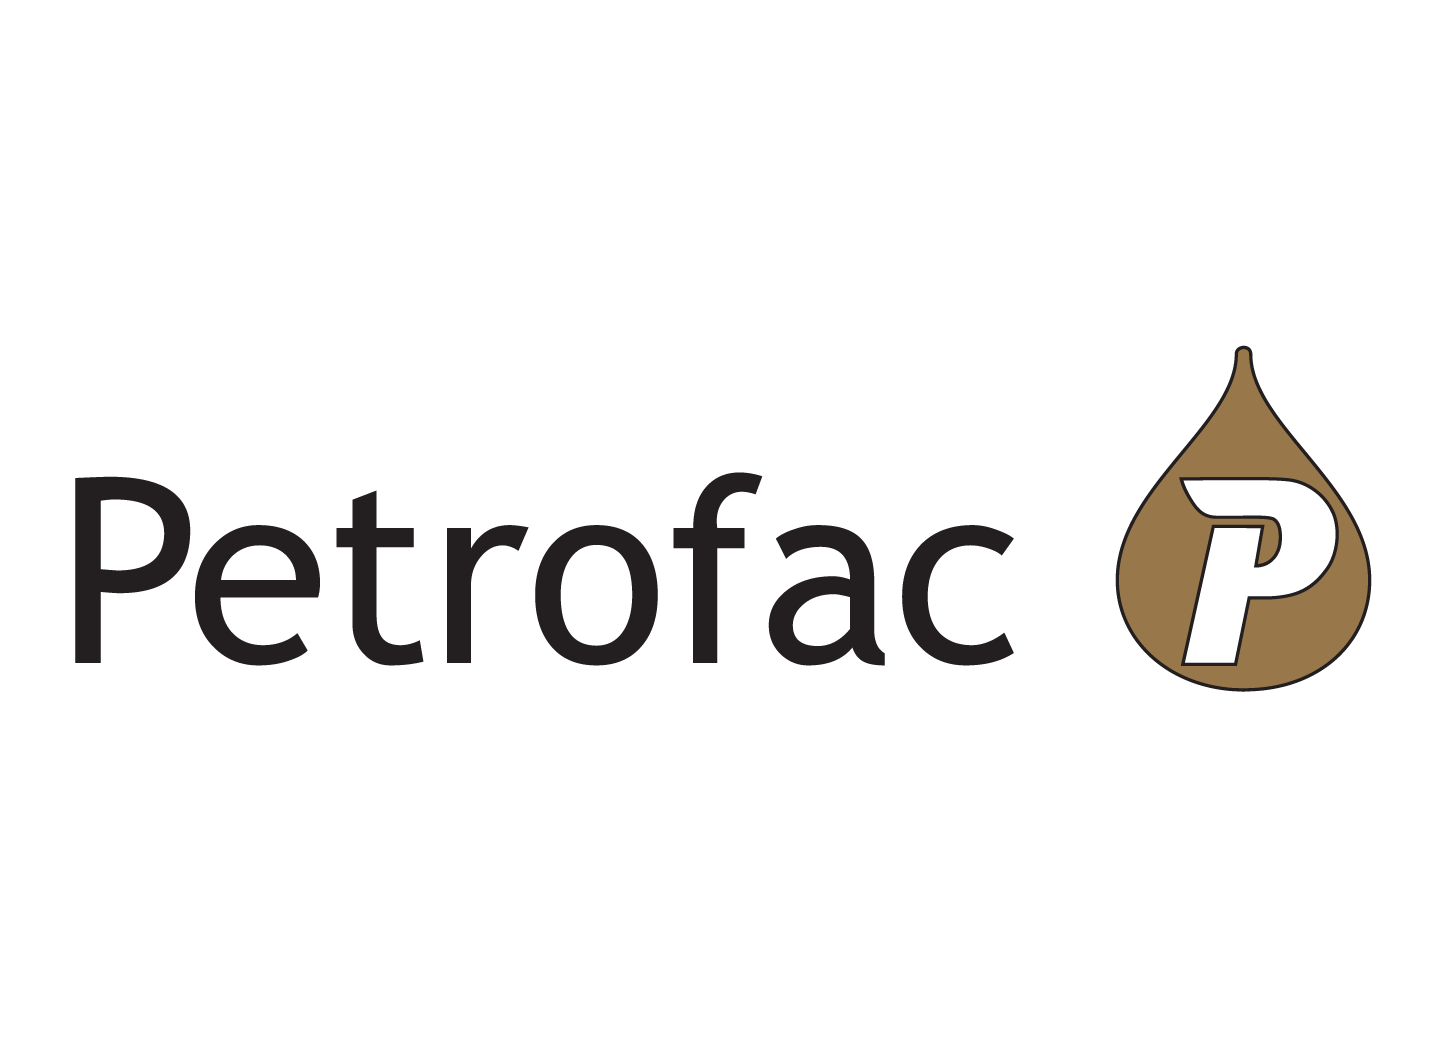 Petrofac